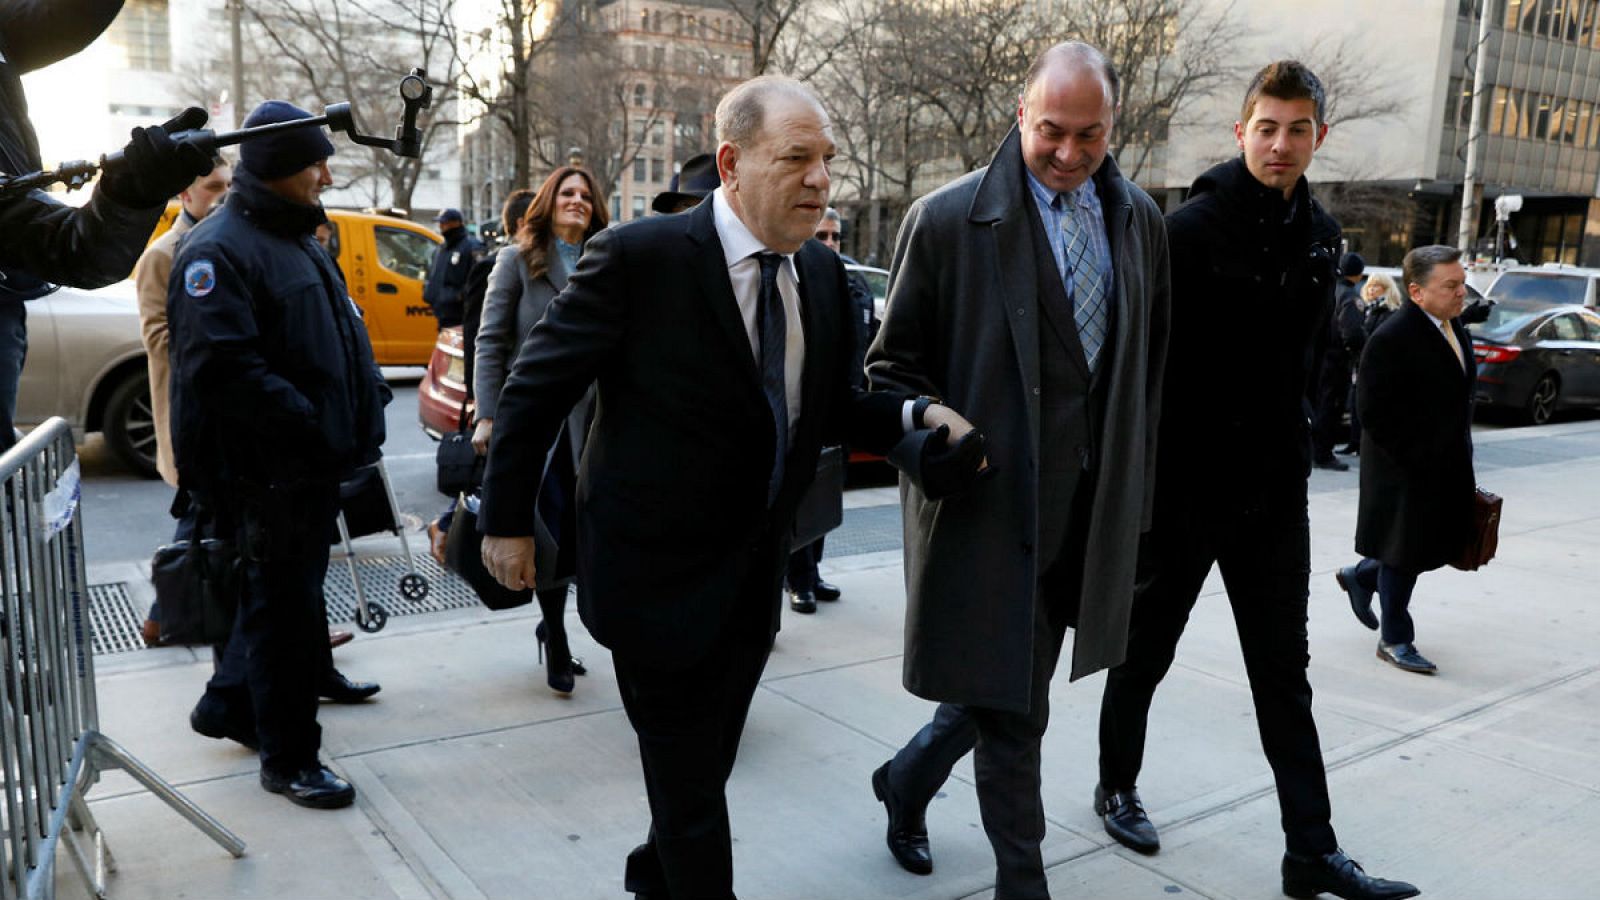 El antiguo productor de cine y magnate, Harvey Weinstein, llega a Nueva York acompañado de sus abogados para enfrentarse al juicio que decidirá si es culpable de abusos sexuales.